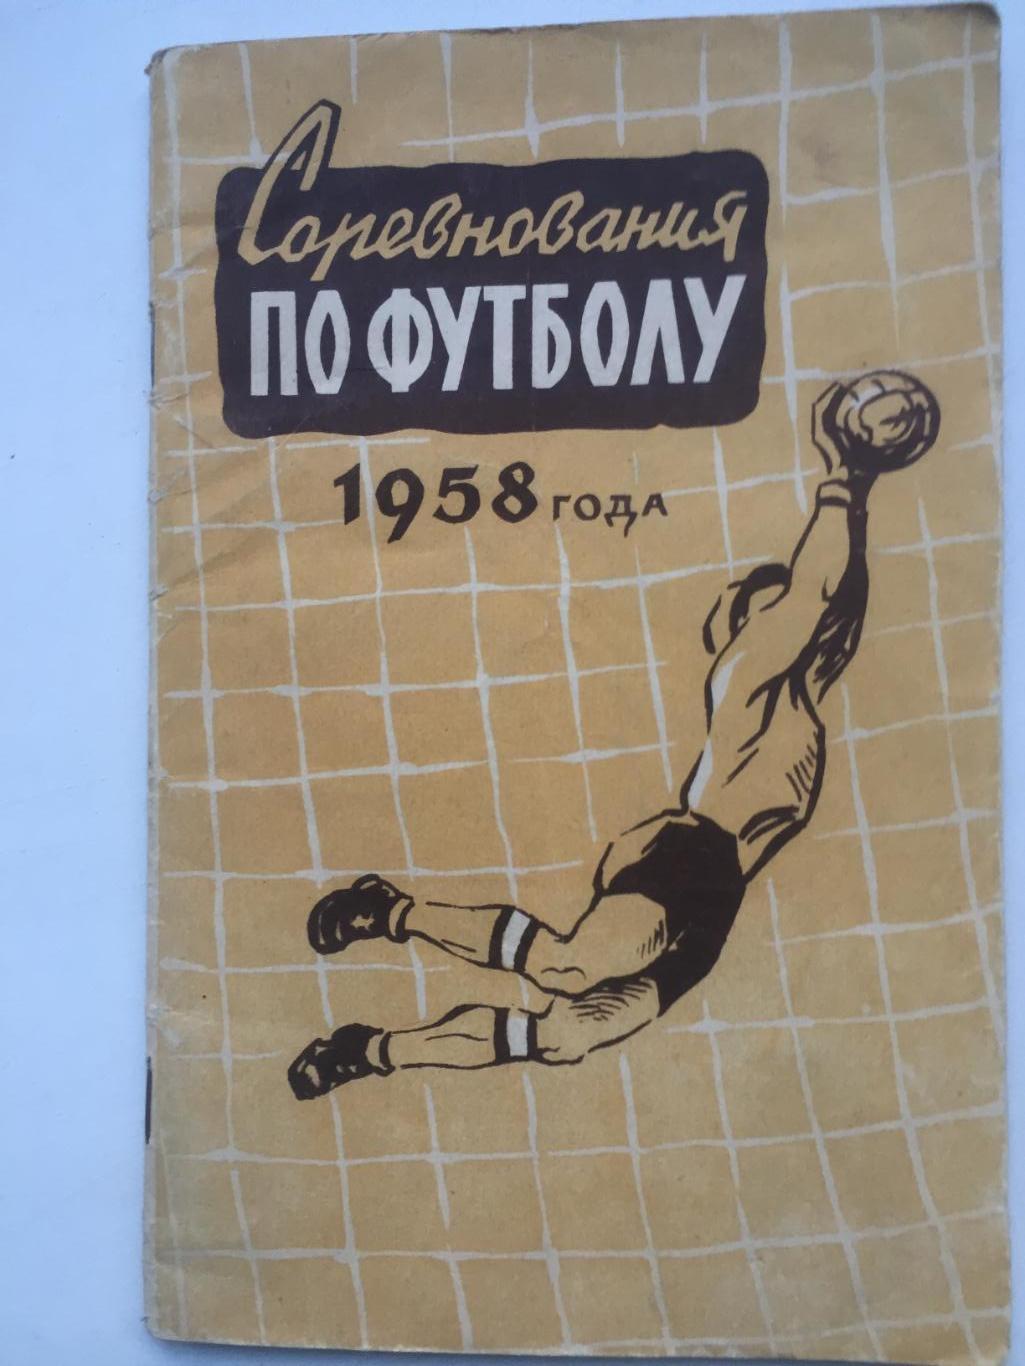 Соревнования по футболу 1958 года ФиС 1958